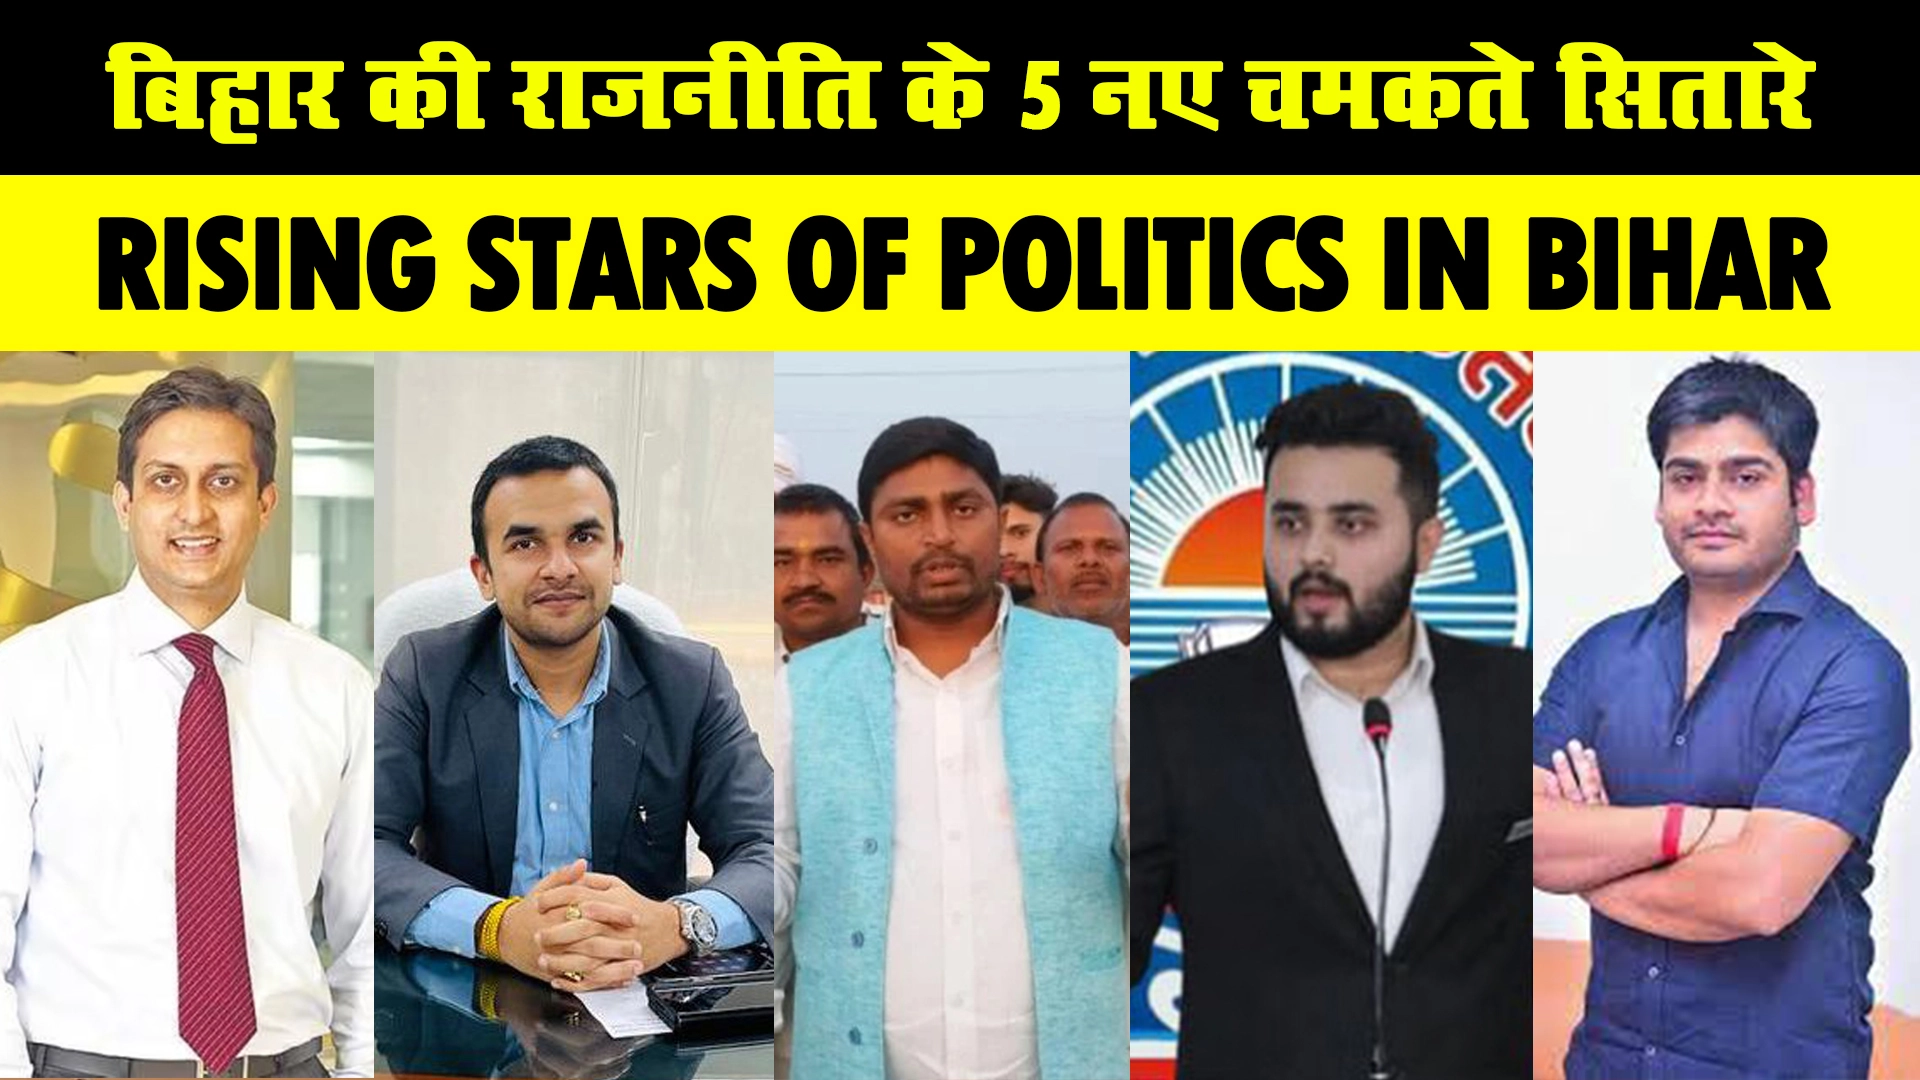 ना तेजस्वी, ना चिराग, 5 ऐसे युवा चेहरे जो बिहार की राजनीति में लगातार बढ़ रहे हैं, मिसाल कायम कर रहे हैं, Top 5 Rising Stars of Politics in Bihar